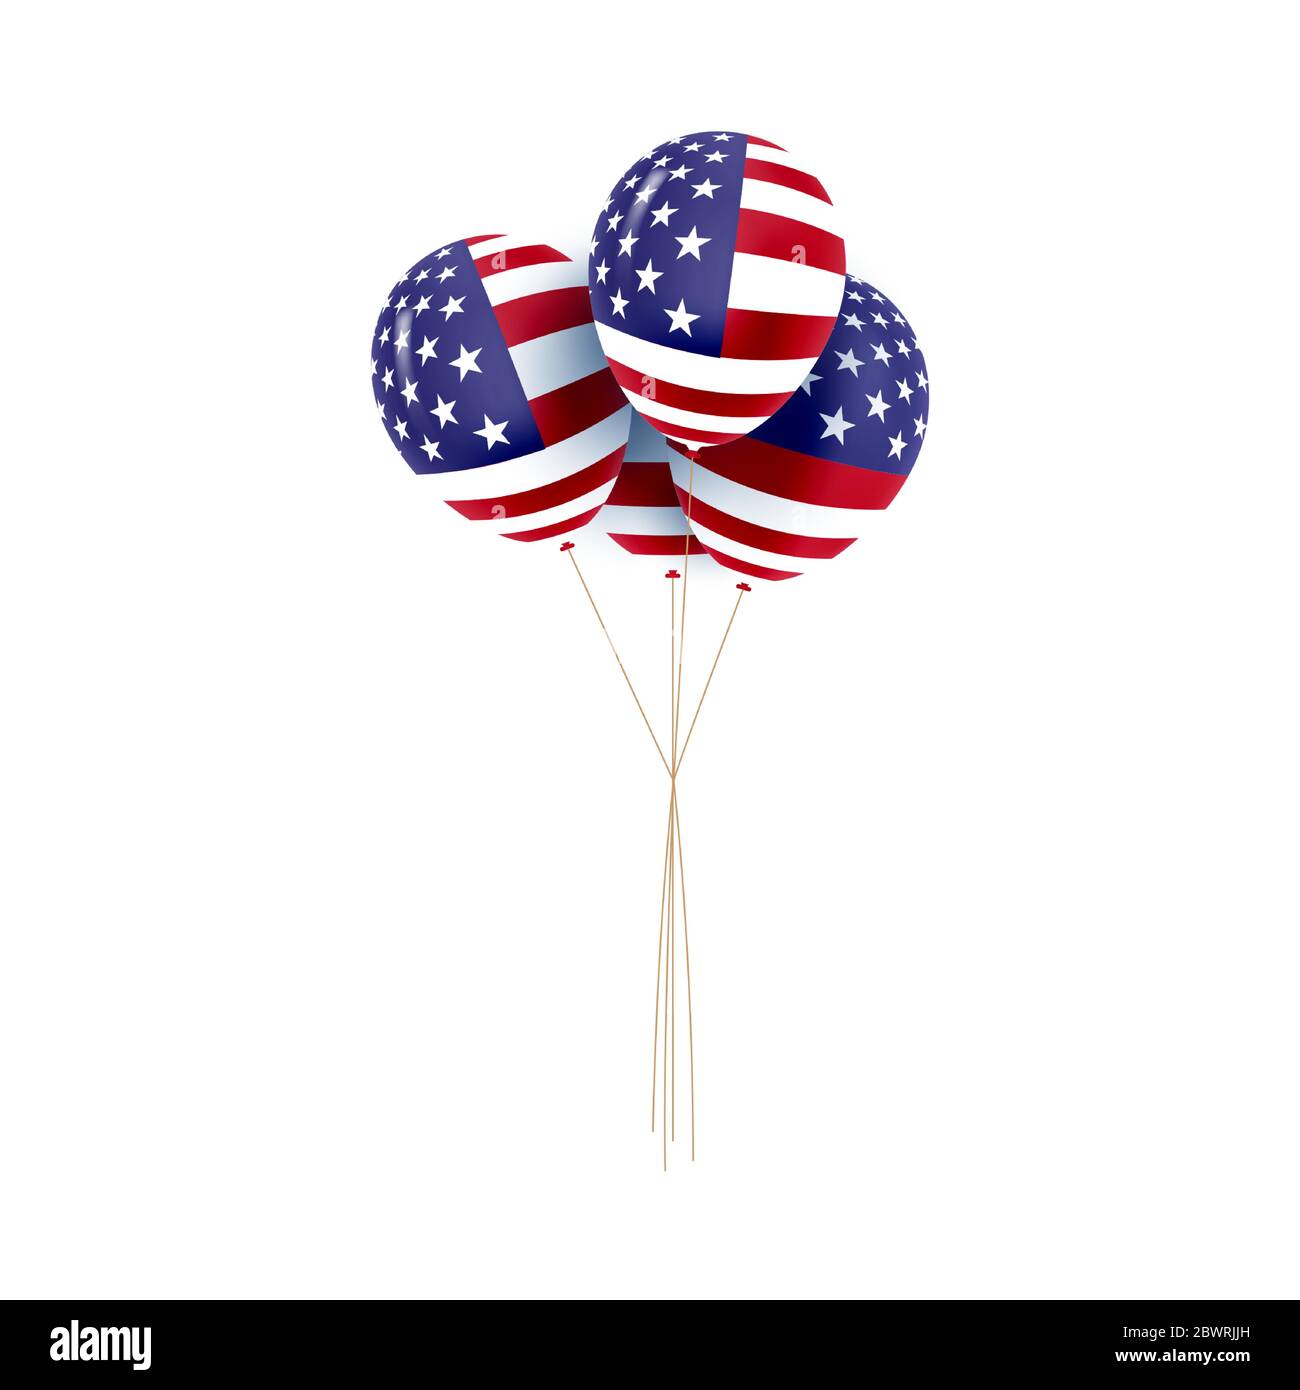 BALLONS PATRIOTIQUE AMÉRICAINS. Ballons colorés spécialement pour le 4 juillet. Martin Luther King. Couleurs nationales. Illustration de Vecteur